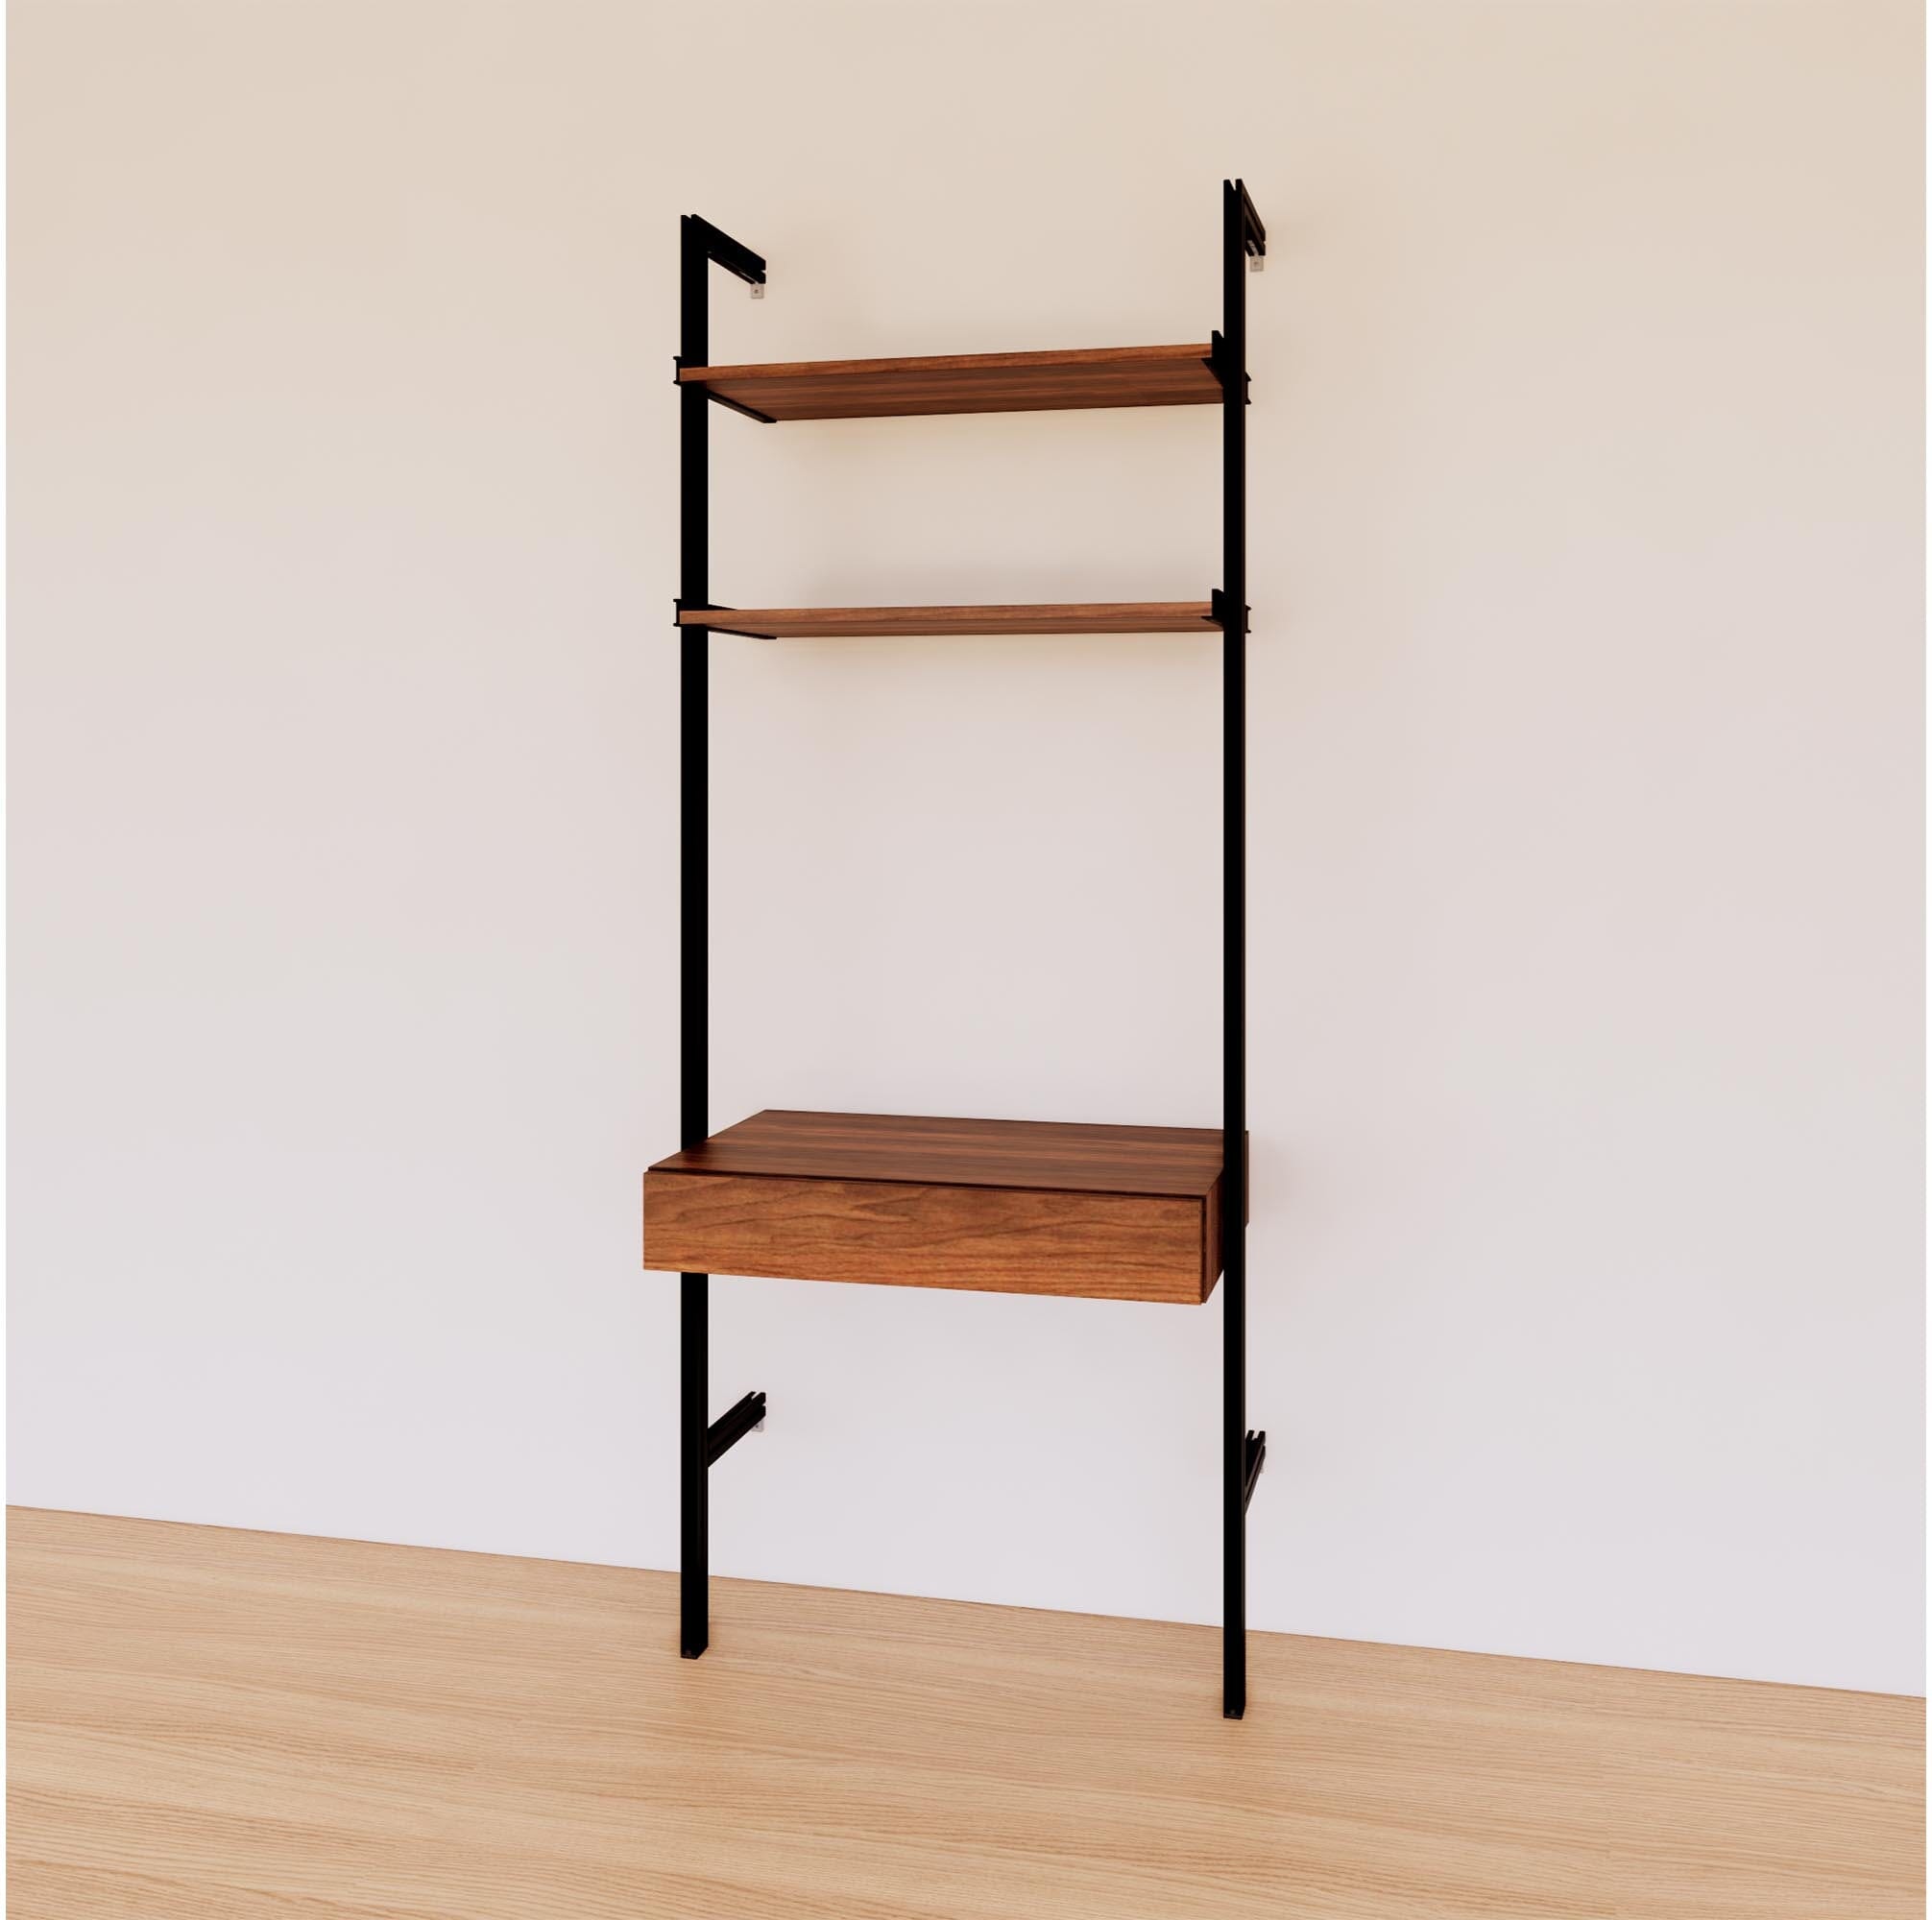 31 Desk Option with Shelves – Modern Shelving